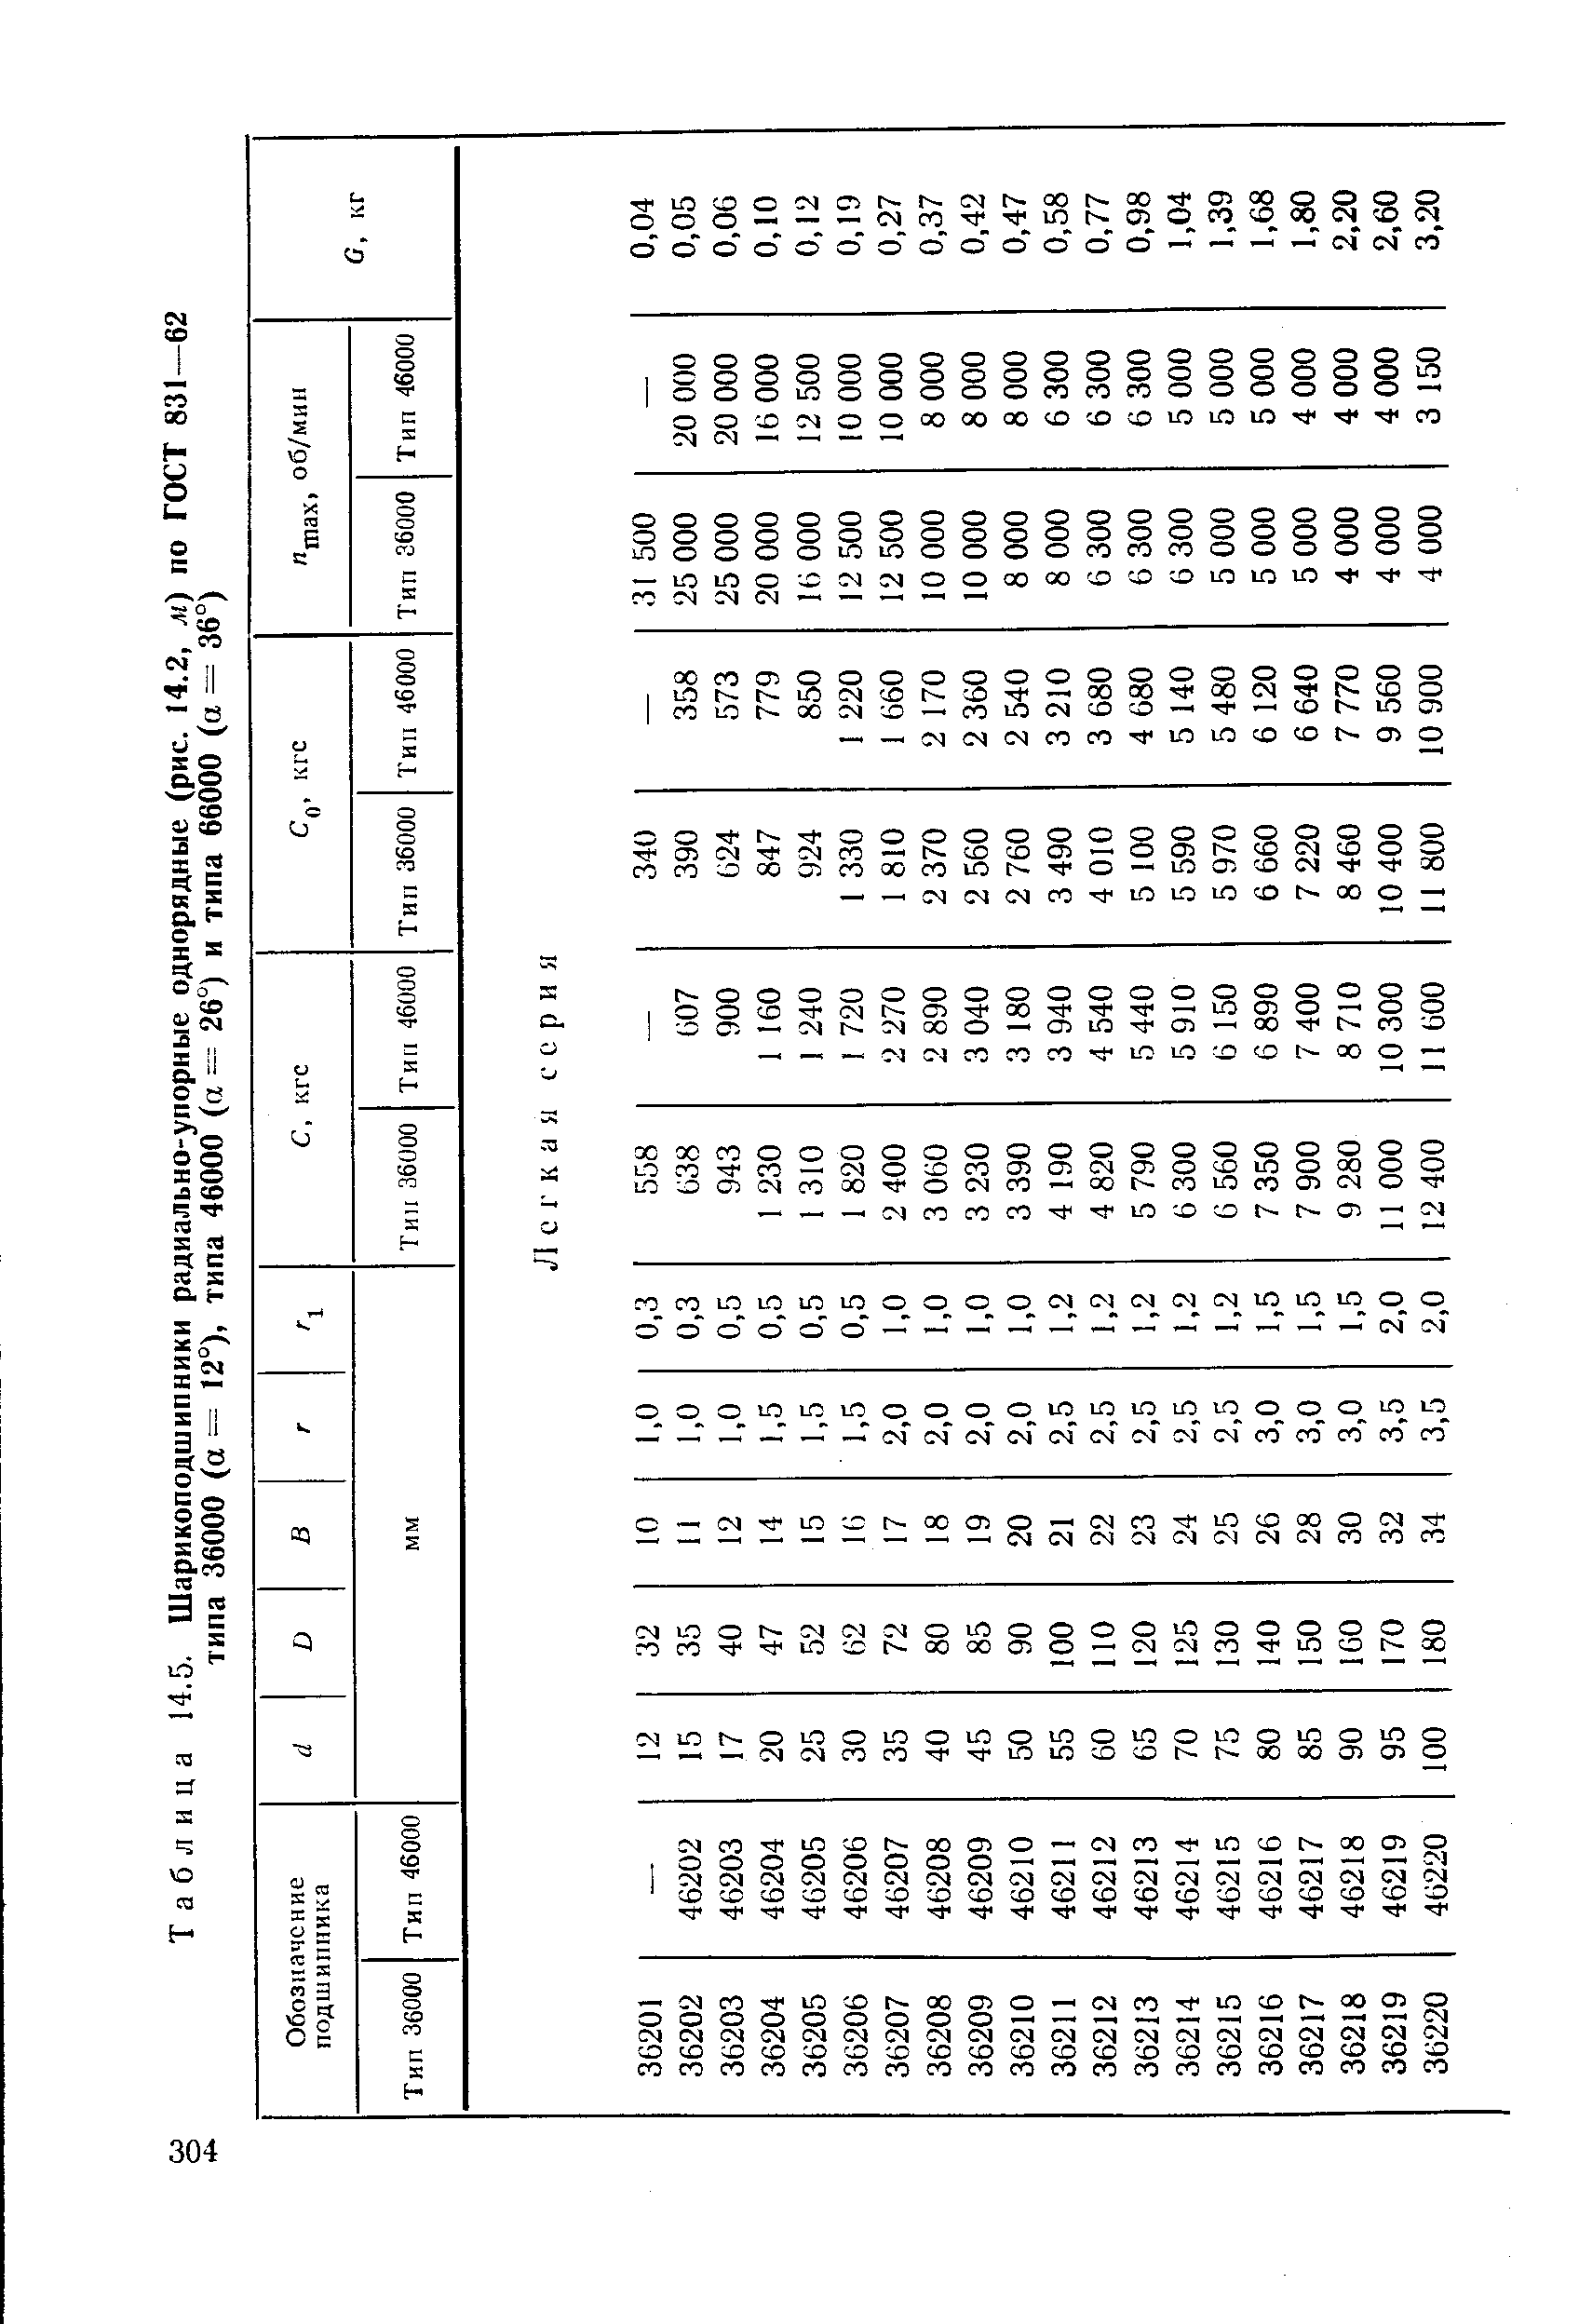 Таблица 14.5. Шарикоподшипники радиально-упорные однорядные (рис. 14.2, л) по ГОСТ 831—62 типа 36000 (а = 12°), типа 46000 (а === 26°) и типа 66000 (а = 36°)
